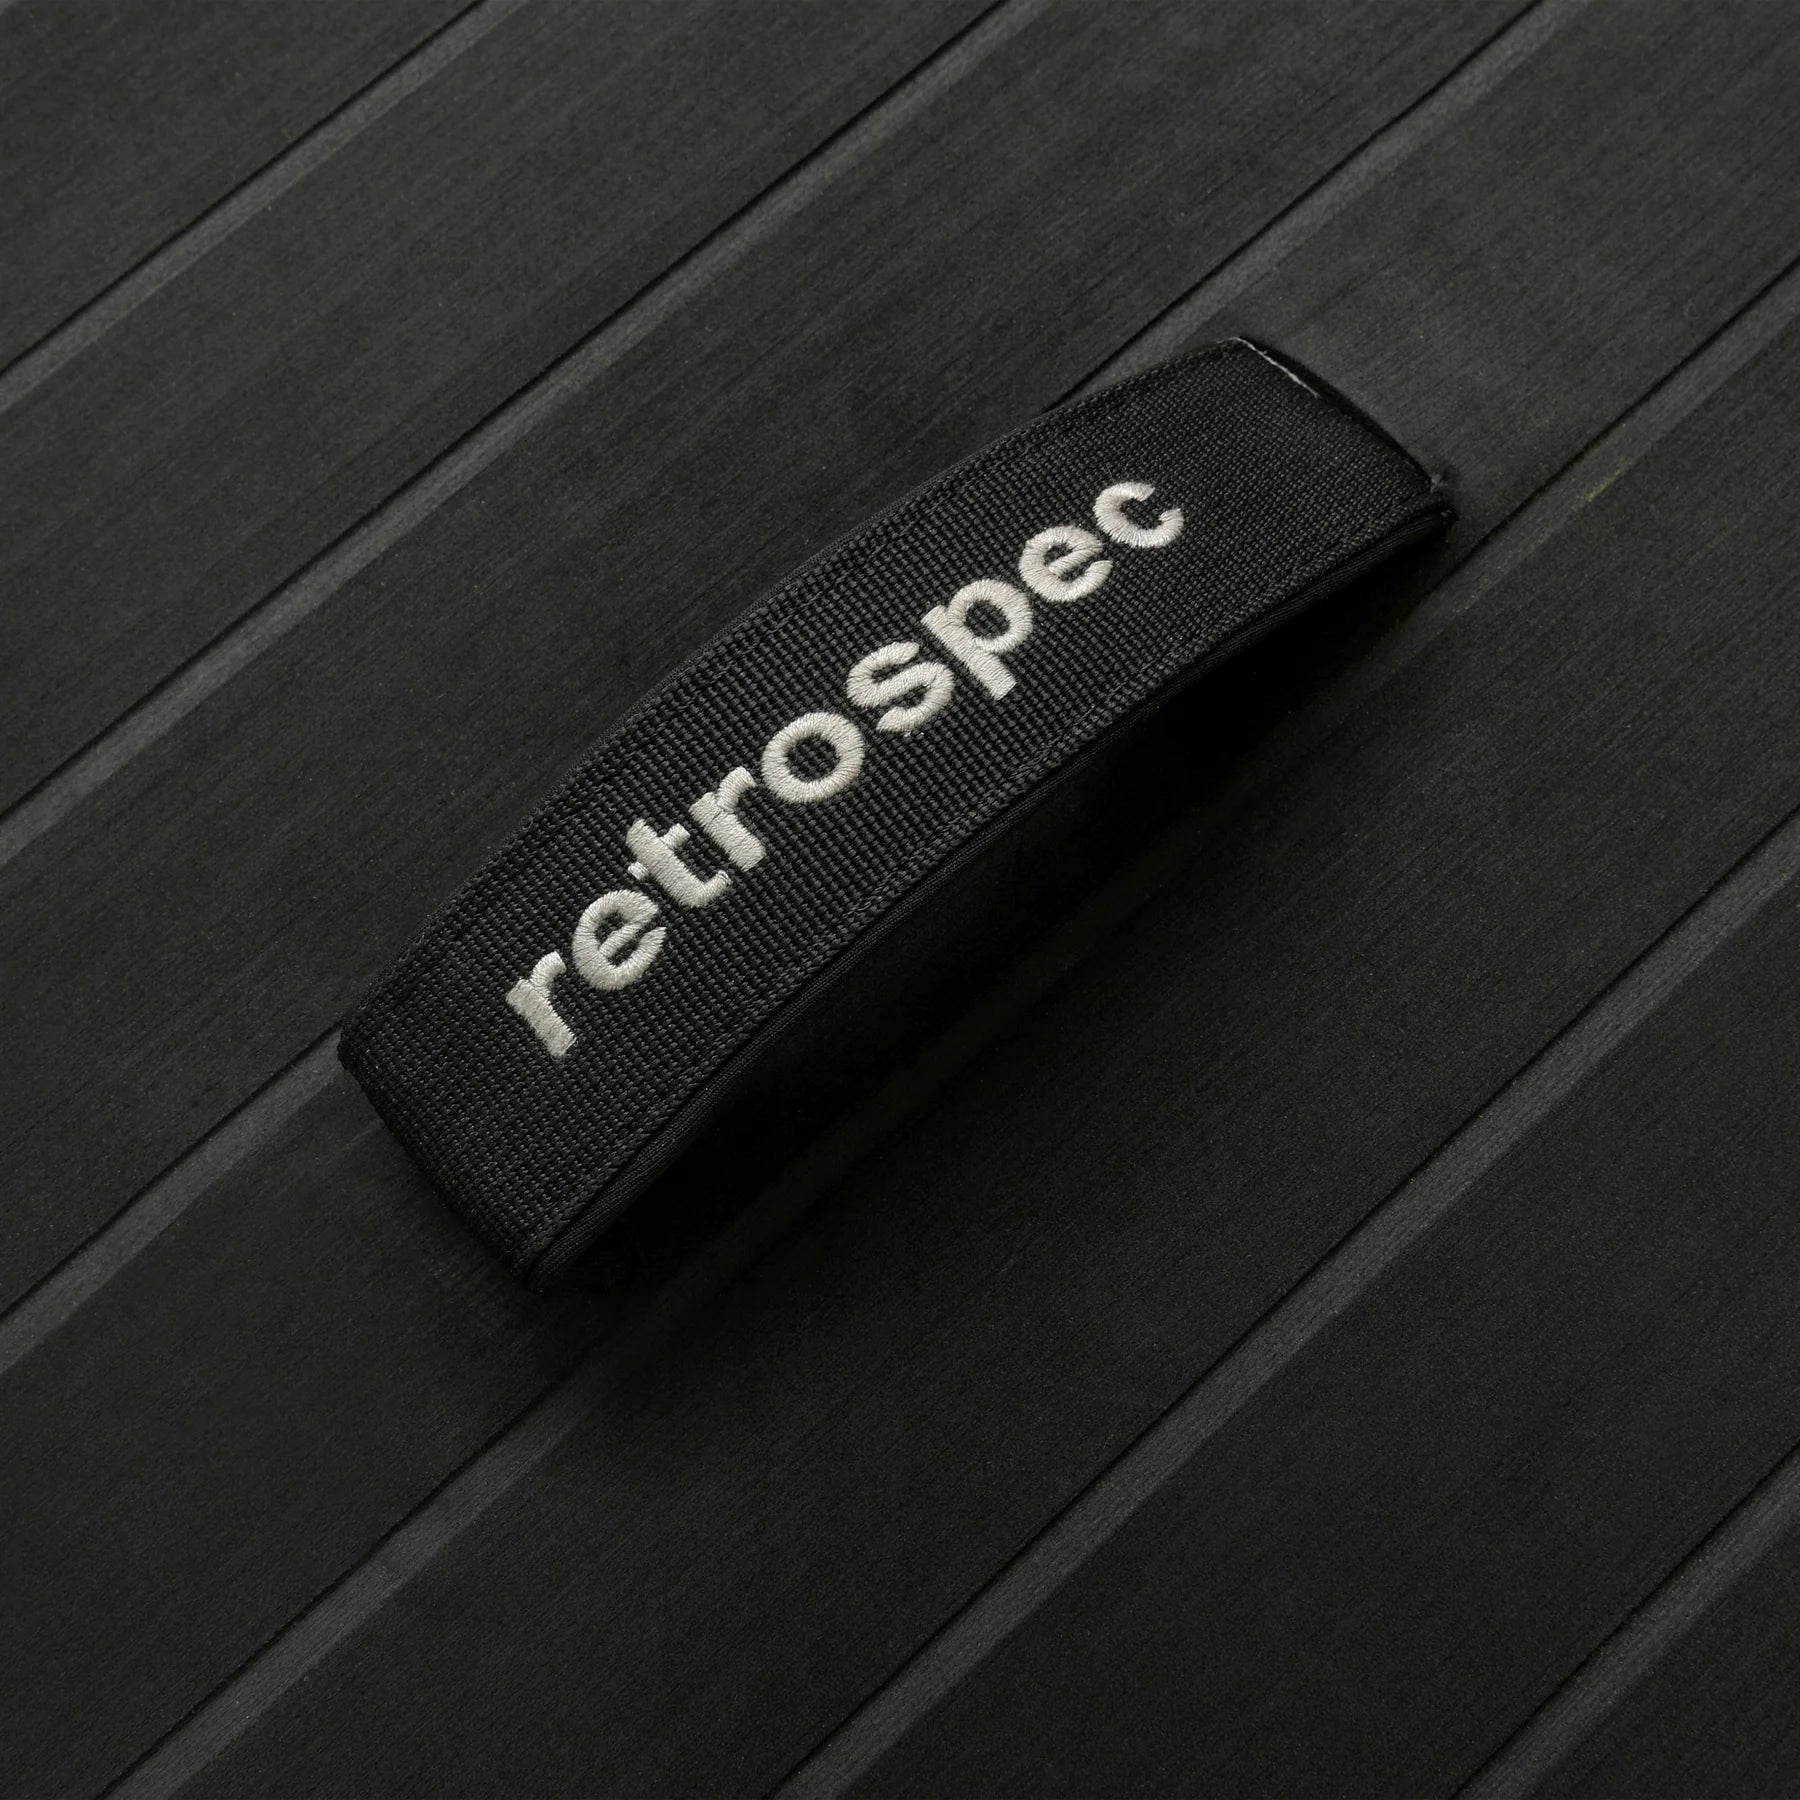 RETROSPEC - The Weekender 2 10'6